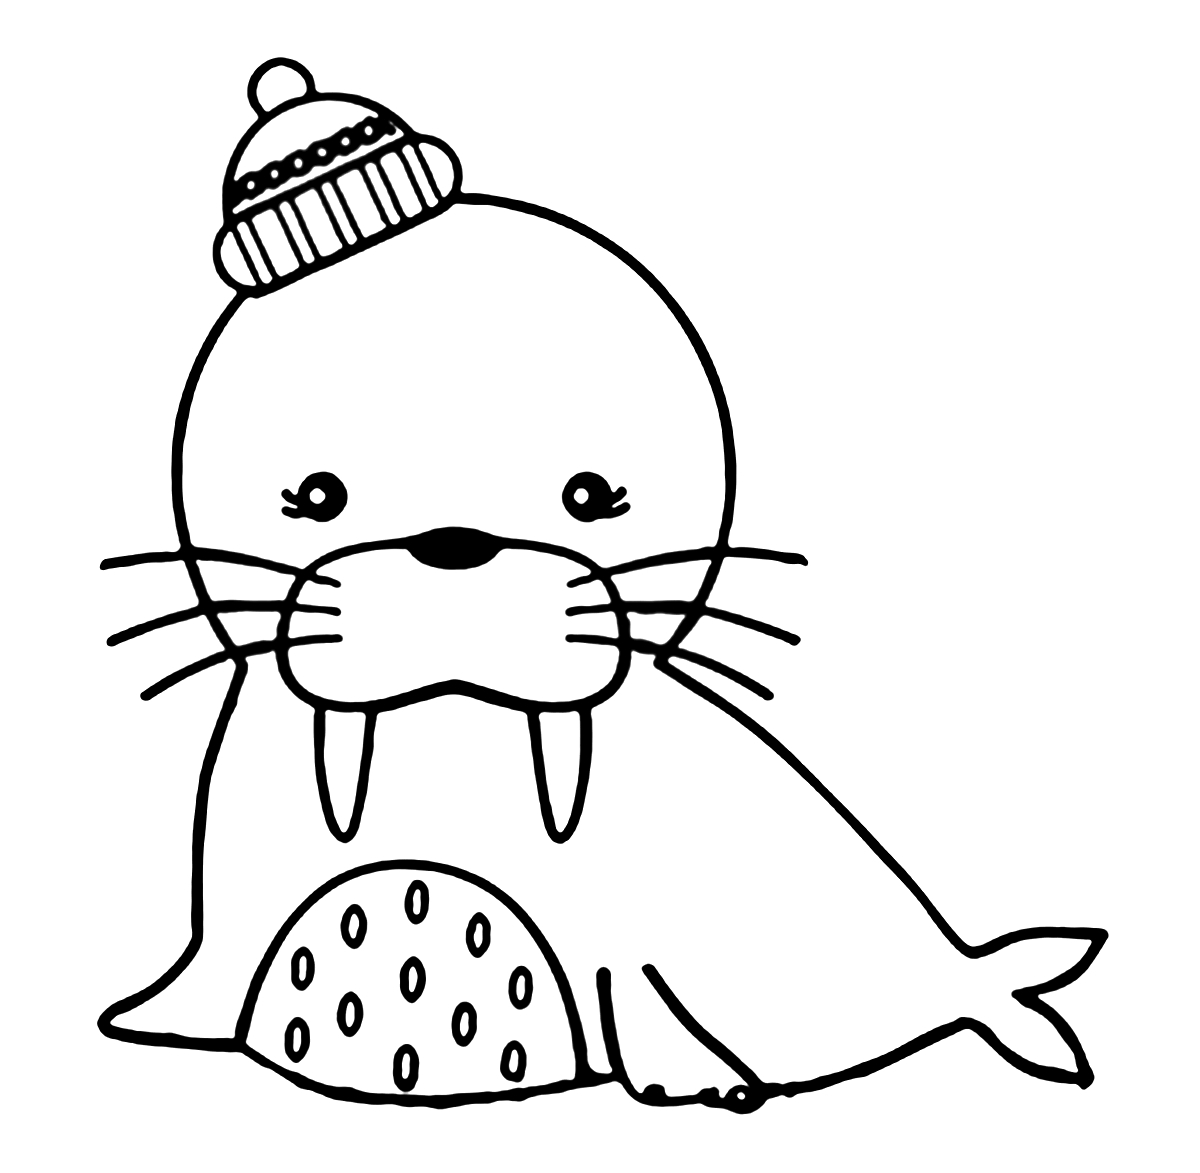 Riscos graciosos (Cute Drawings): Riscos de animais marinhos